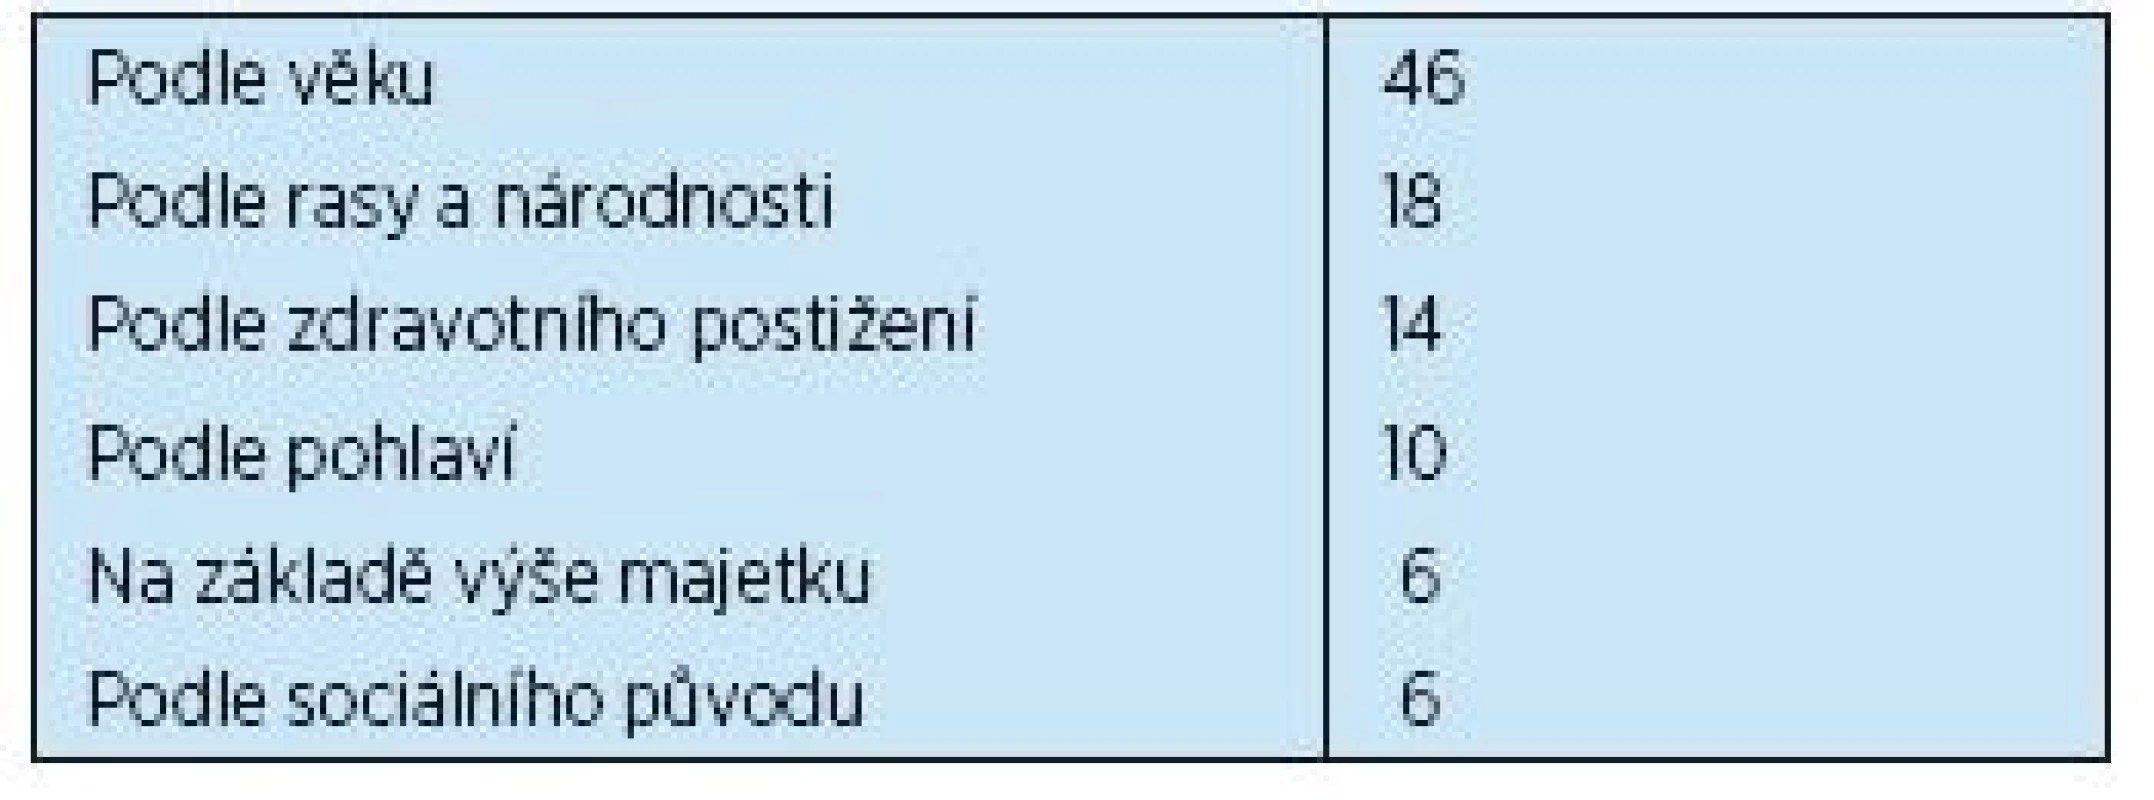 Typ diskriminace v ČR (v %)